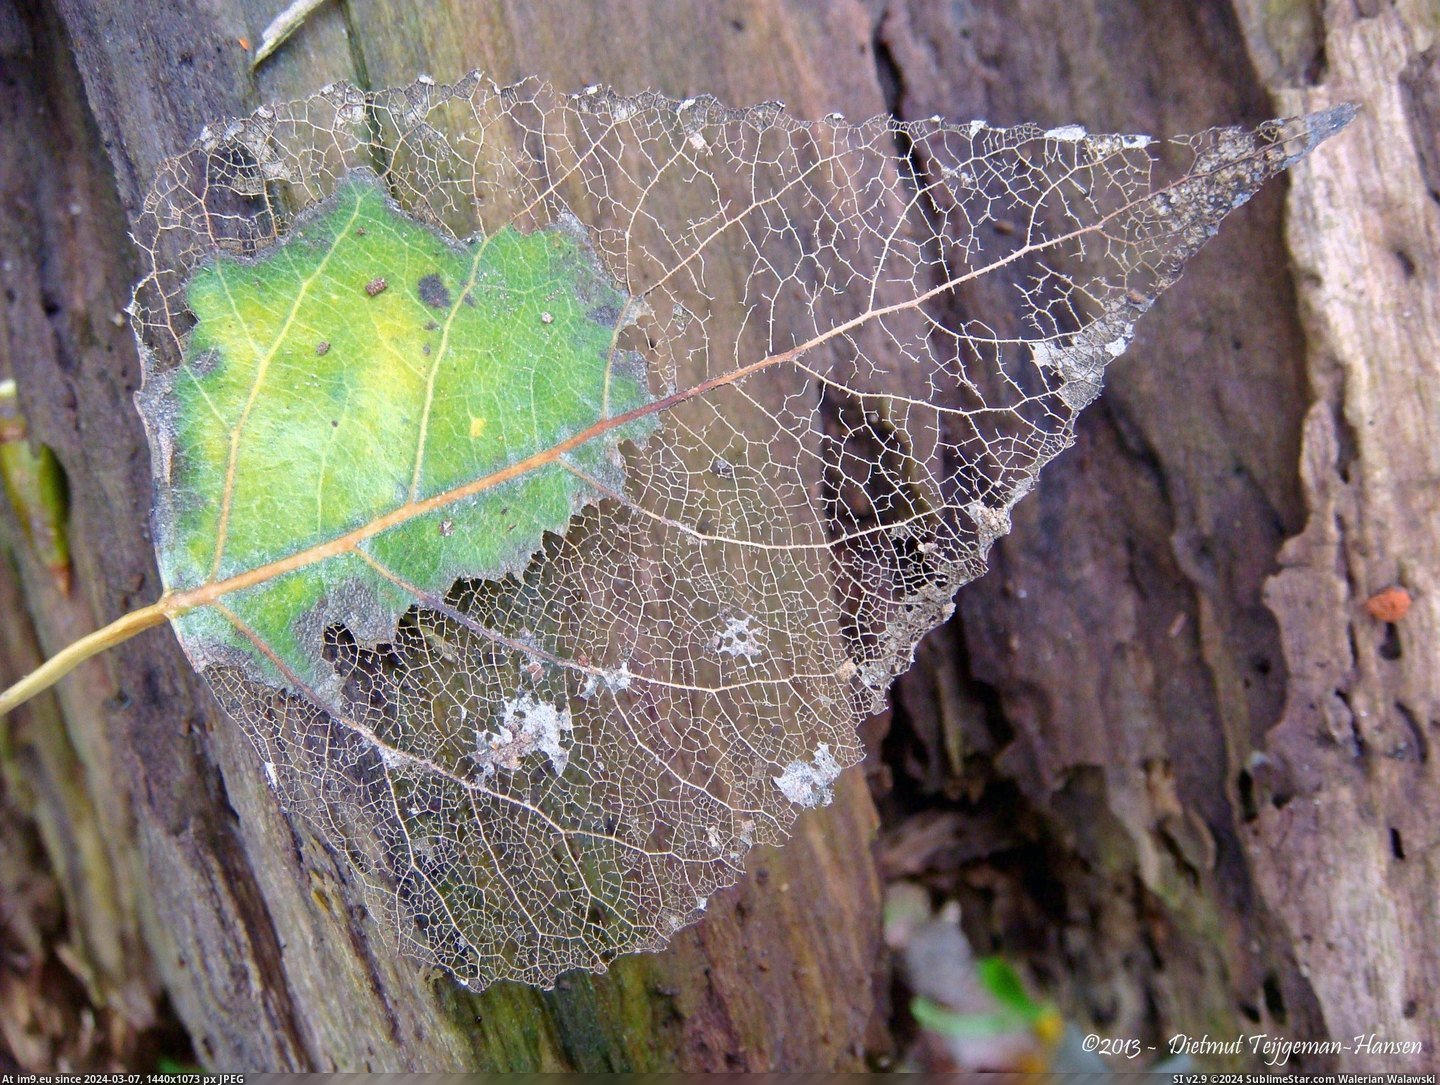 #Leaf  #Deteriorating [Pics] Deteriorating Leaf Pic. (Bild von album My r/PICS favs))